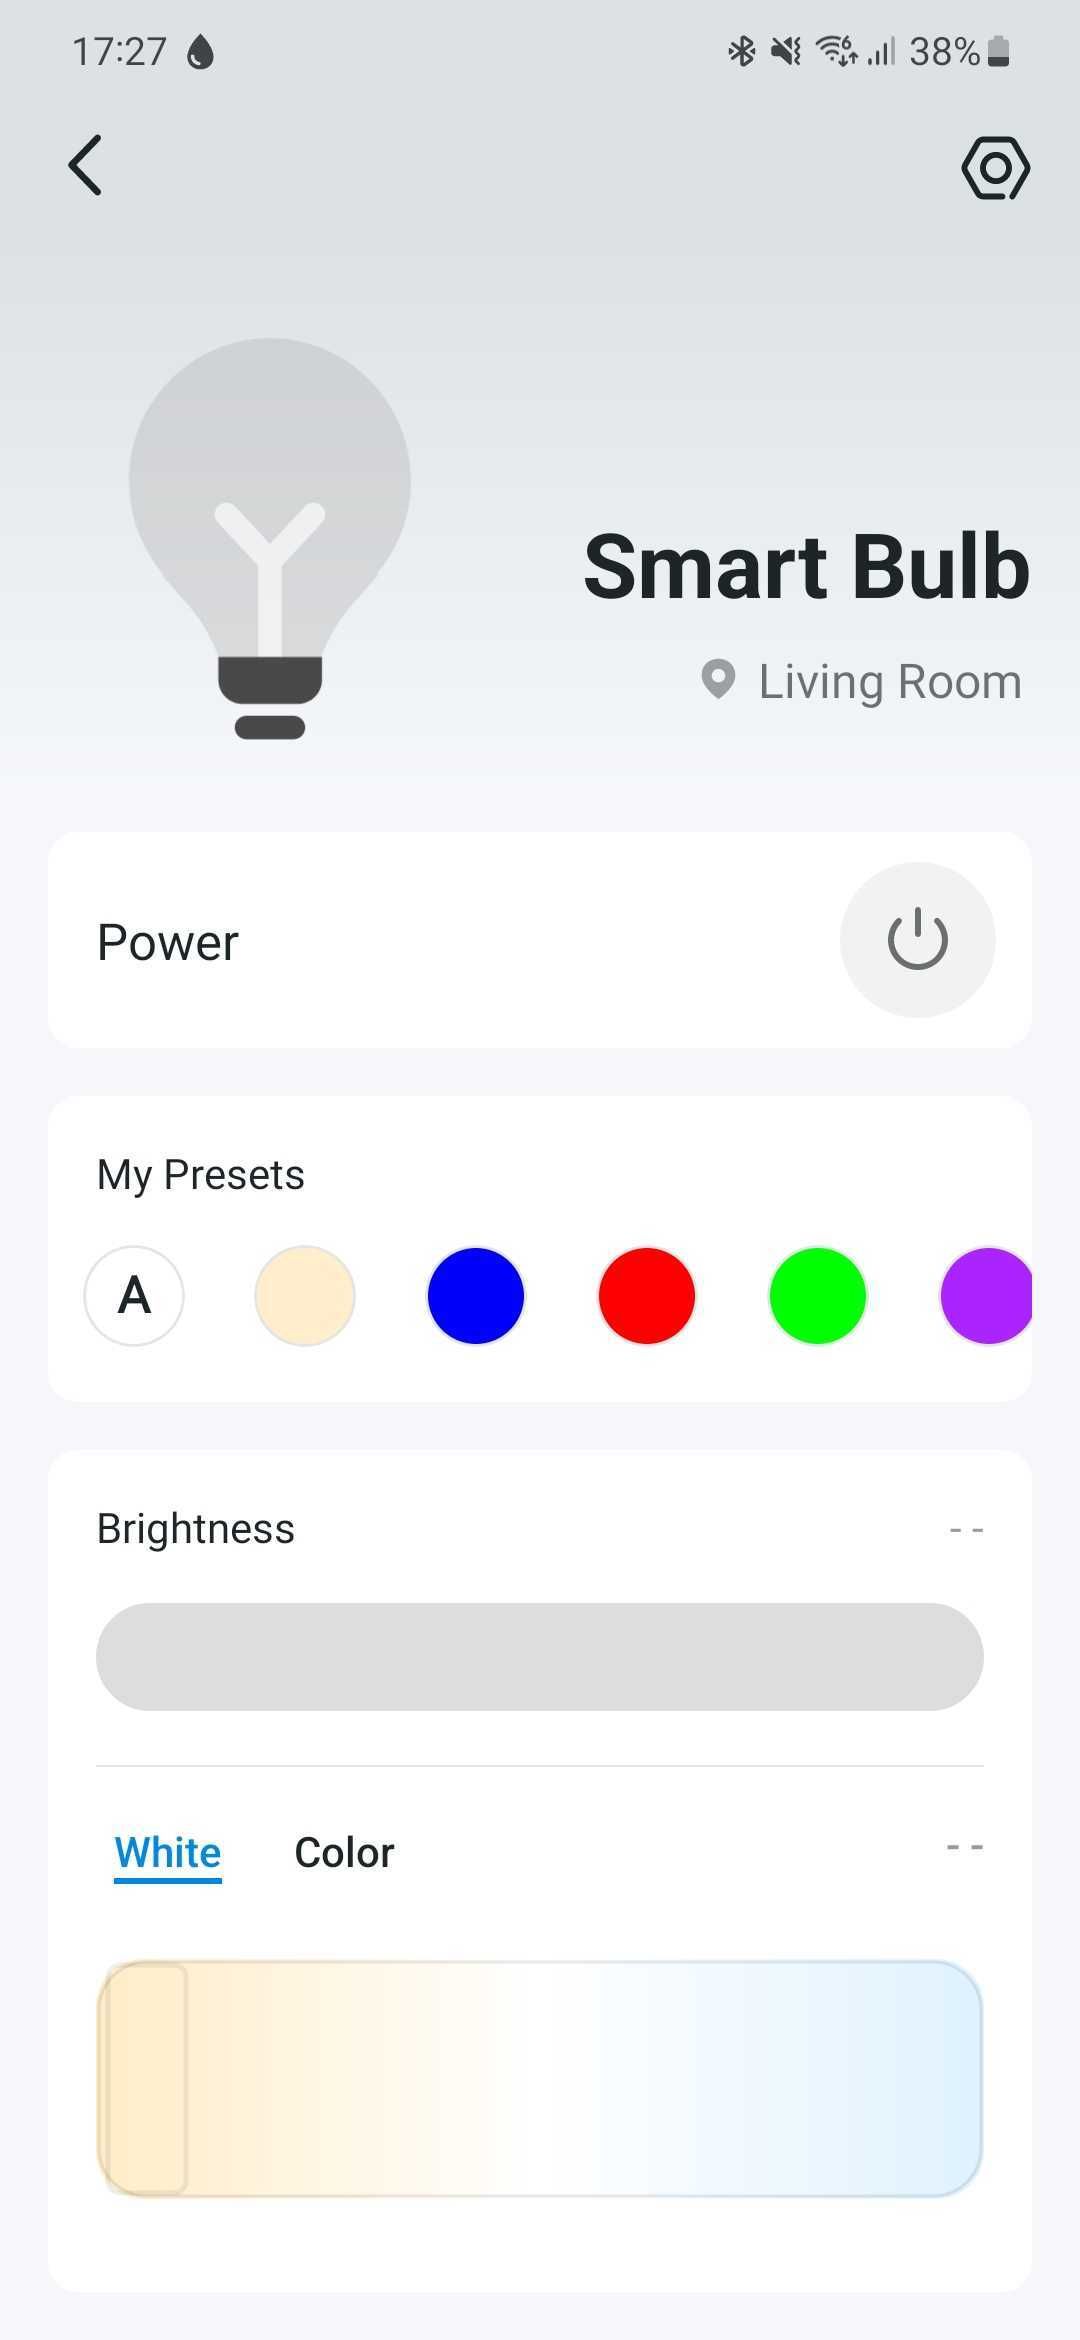 Captura de tela do aplicativo Tapo mostrando os detalhes de uma lâmpada inteligente